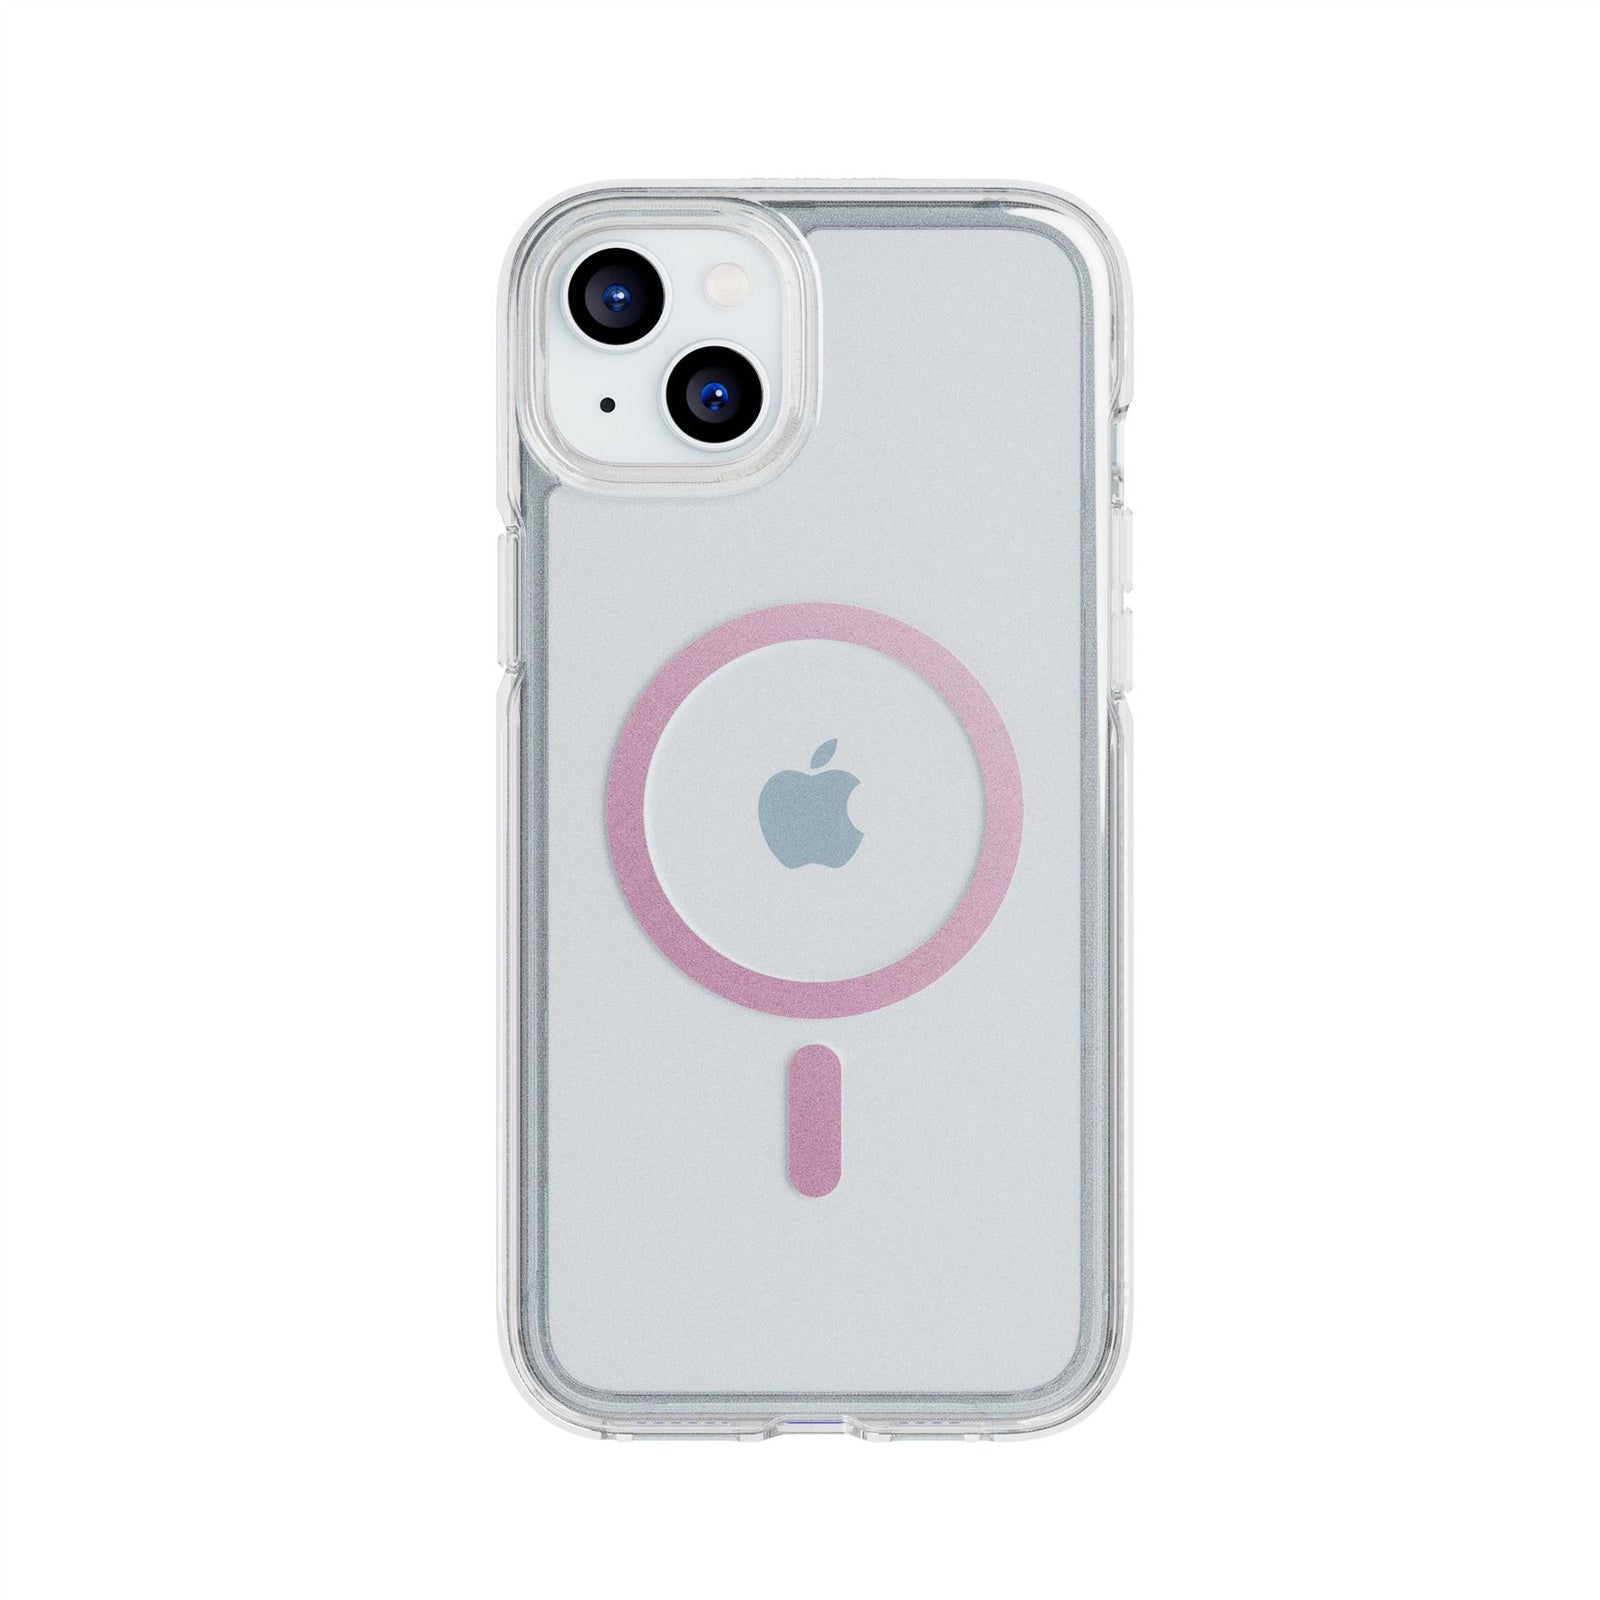 Funda Para Iphone 12 Mini Spigen Crystal Flex Color Rosa